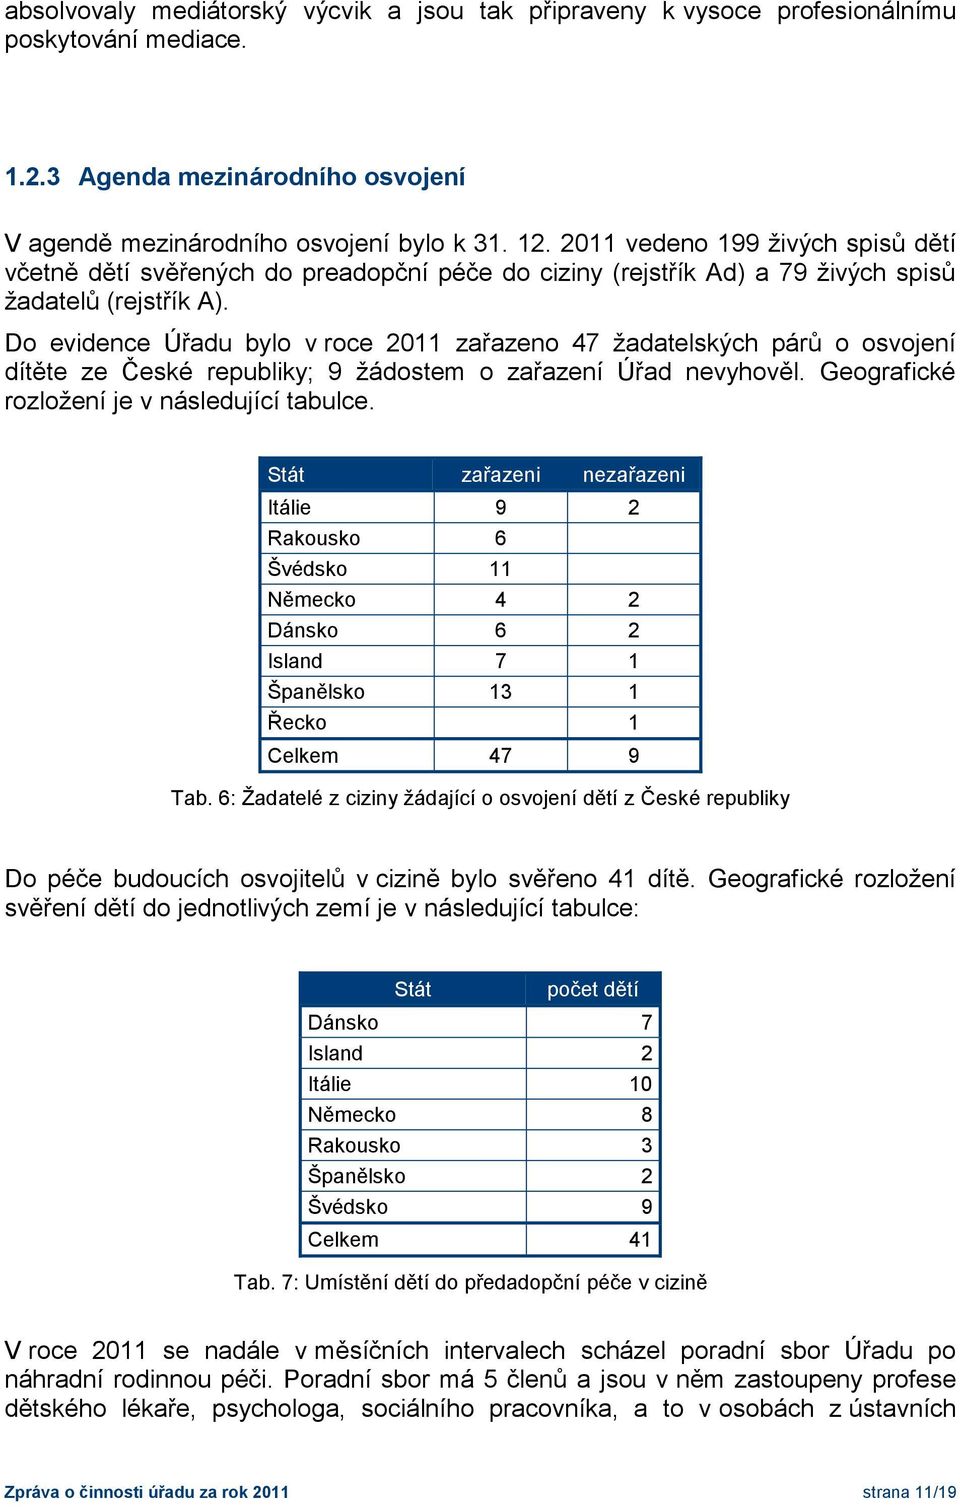 Do evidence Úřadu bylo v roce 2011 zařazeno 47 žadatelských párů o osvojení dítěte ze České republiky; 9 žádostem o zařazení Úřad nevyhověl. Geografické rozložení je v následující tabulce.